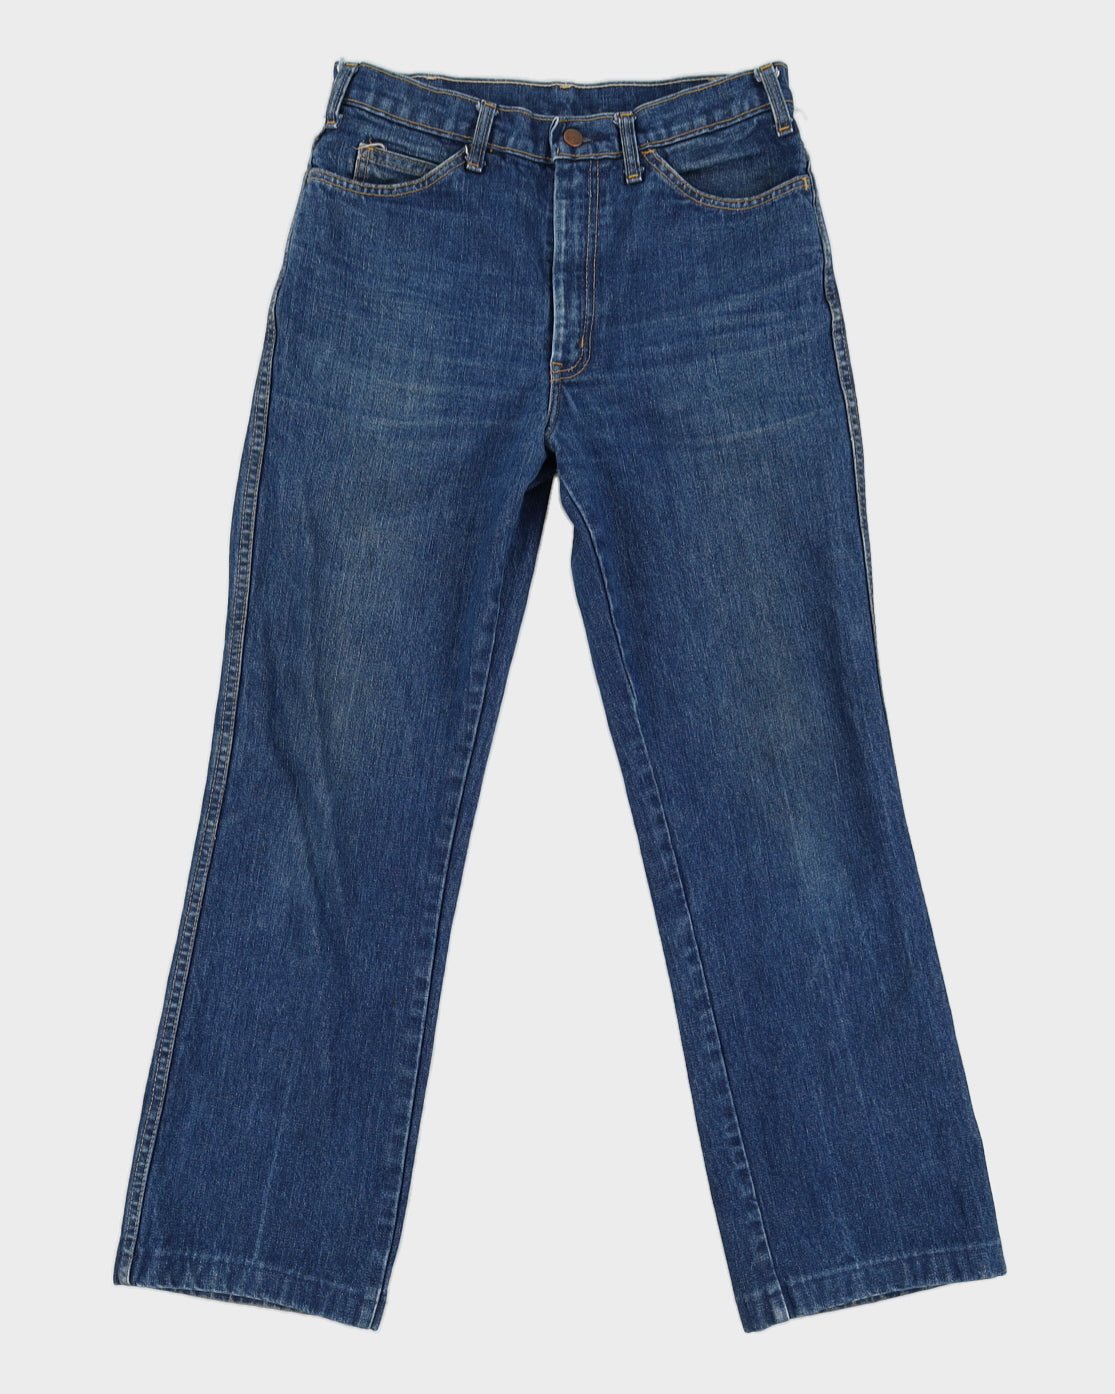 Vintage 70s GWG Dark Wash Denim Jeans - W32